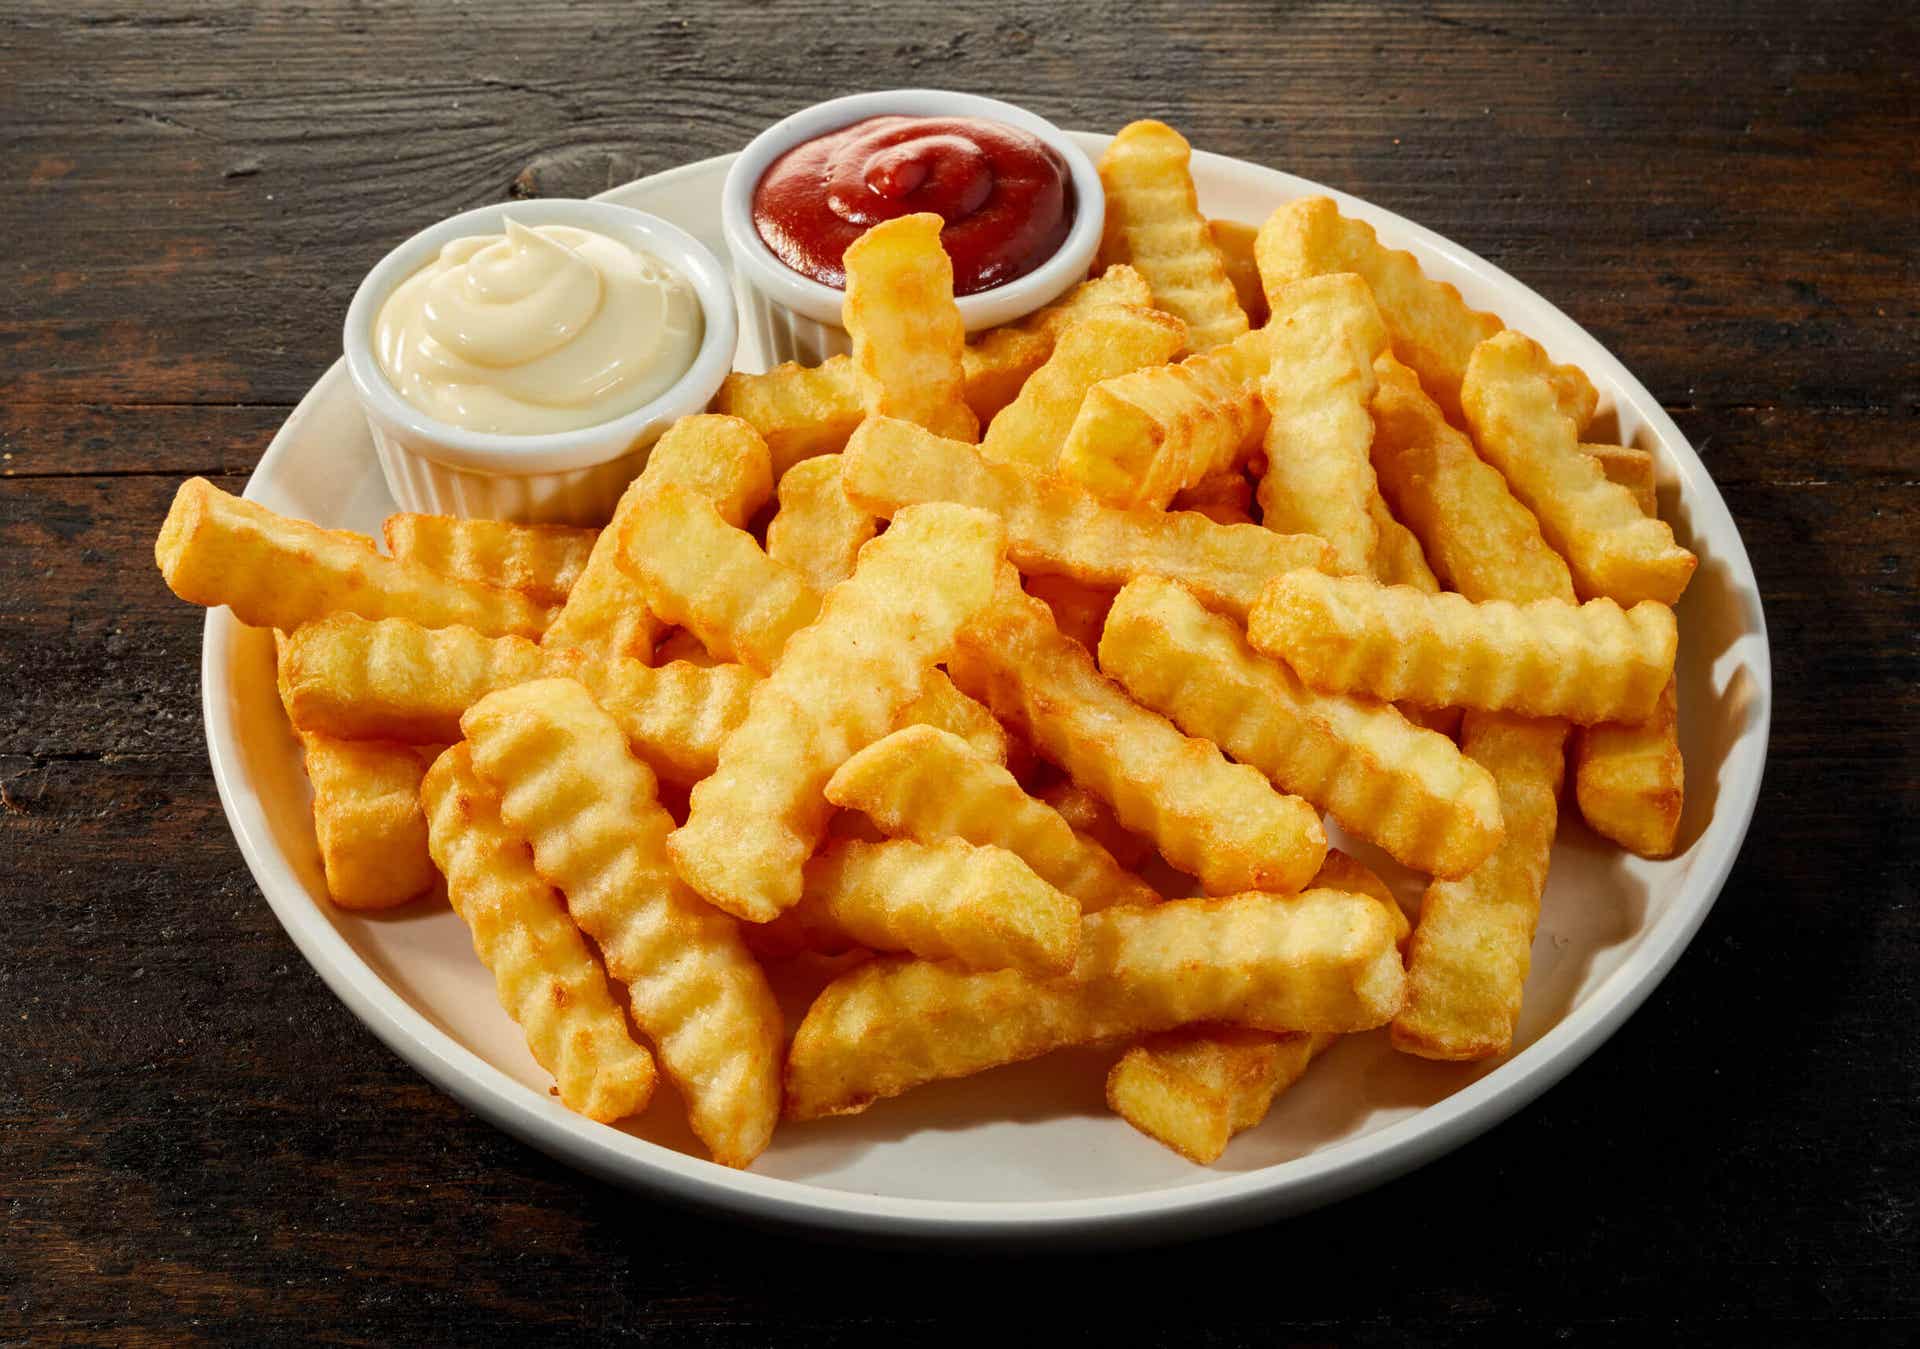 Entre los alimentos prohibidos colon irritable están las patatas fritas.